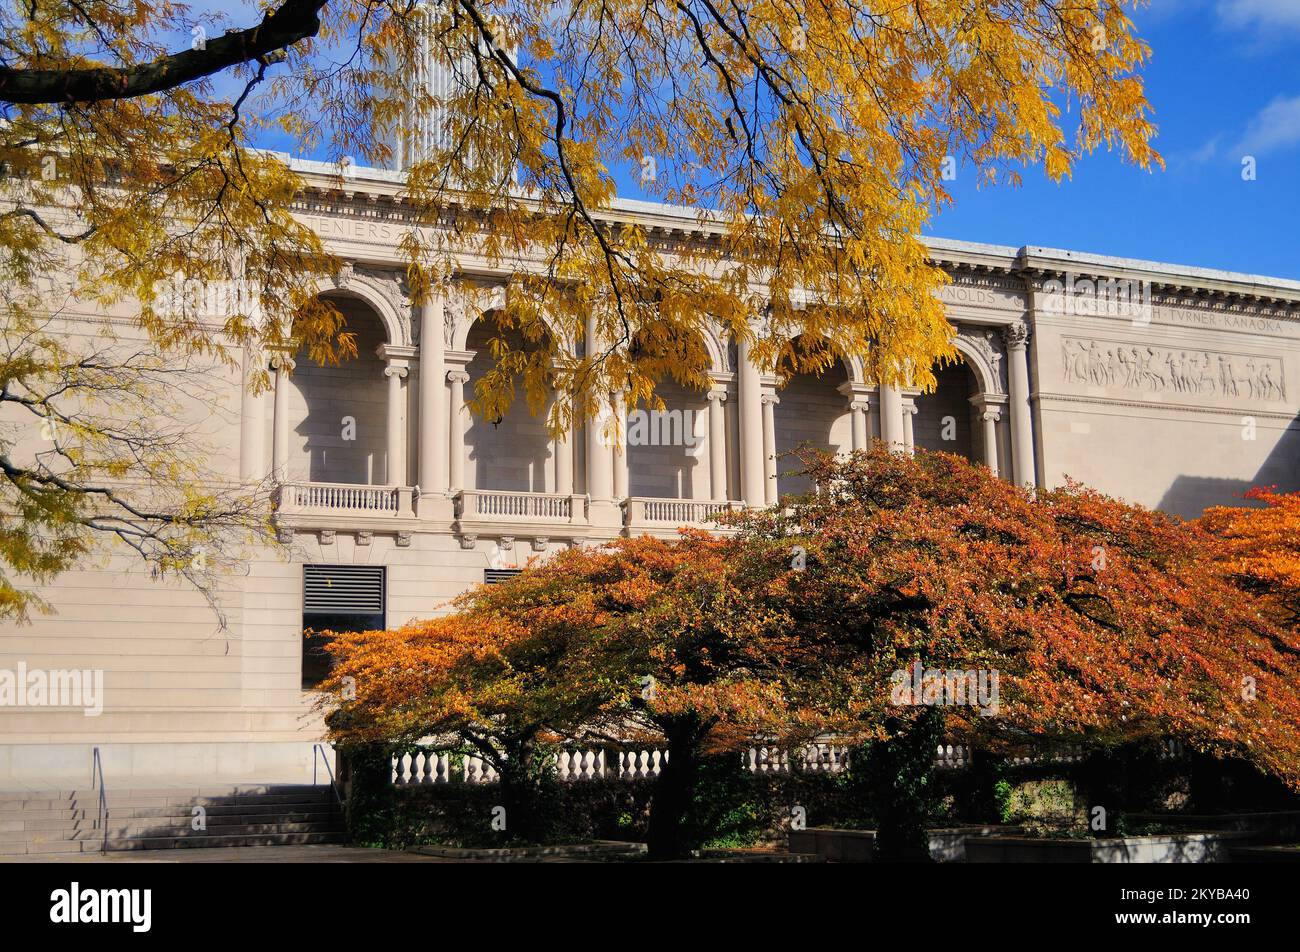 El otoño anuncia su presencia en Chicago, ya que las hojas cambian de color dentro del jardín sur en el Art Institute of Chicago. Foto de stock